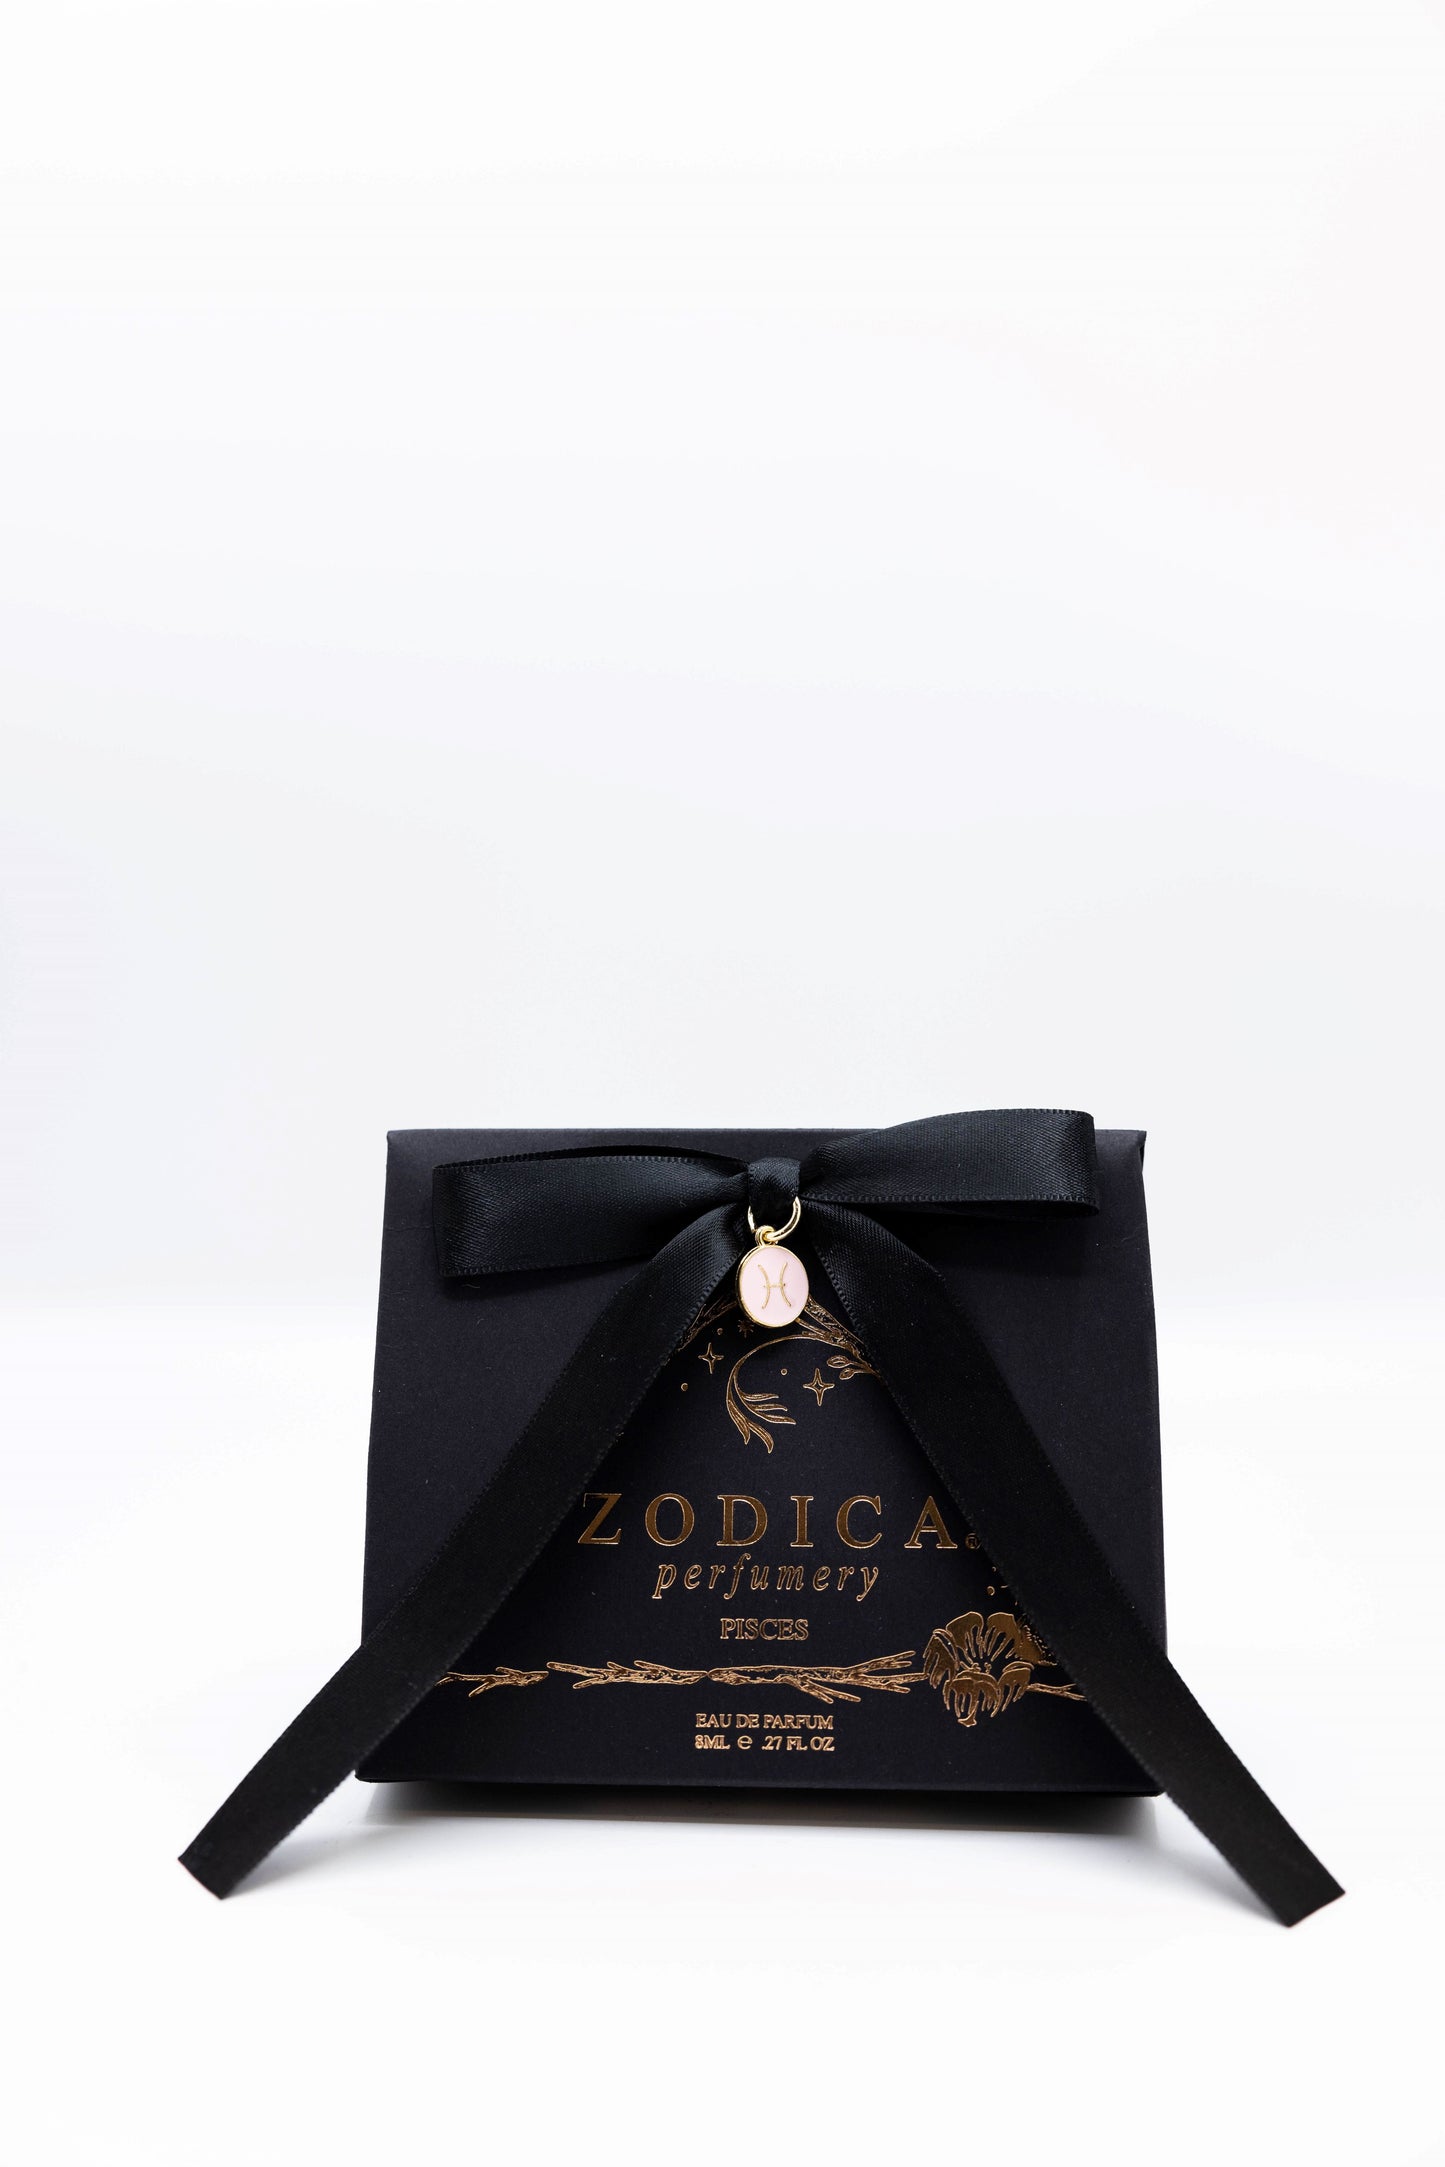 Zodica Travel Perfume Pisces